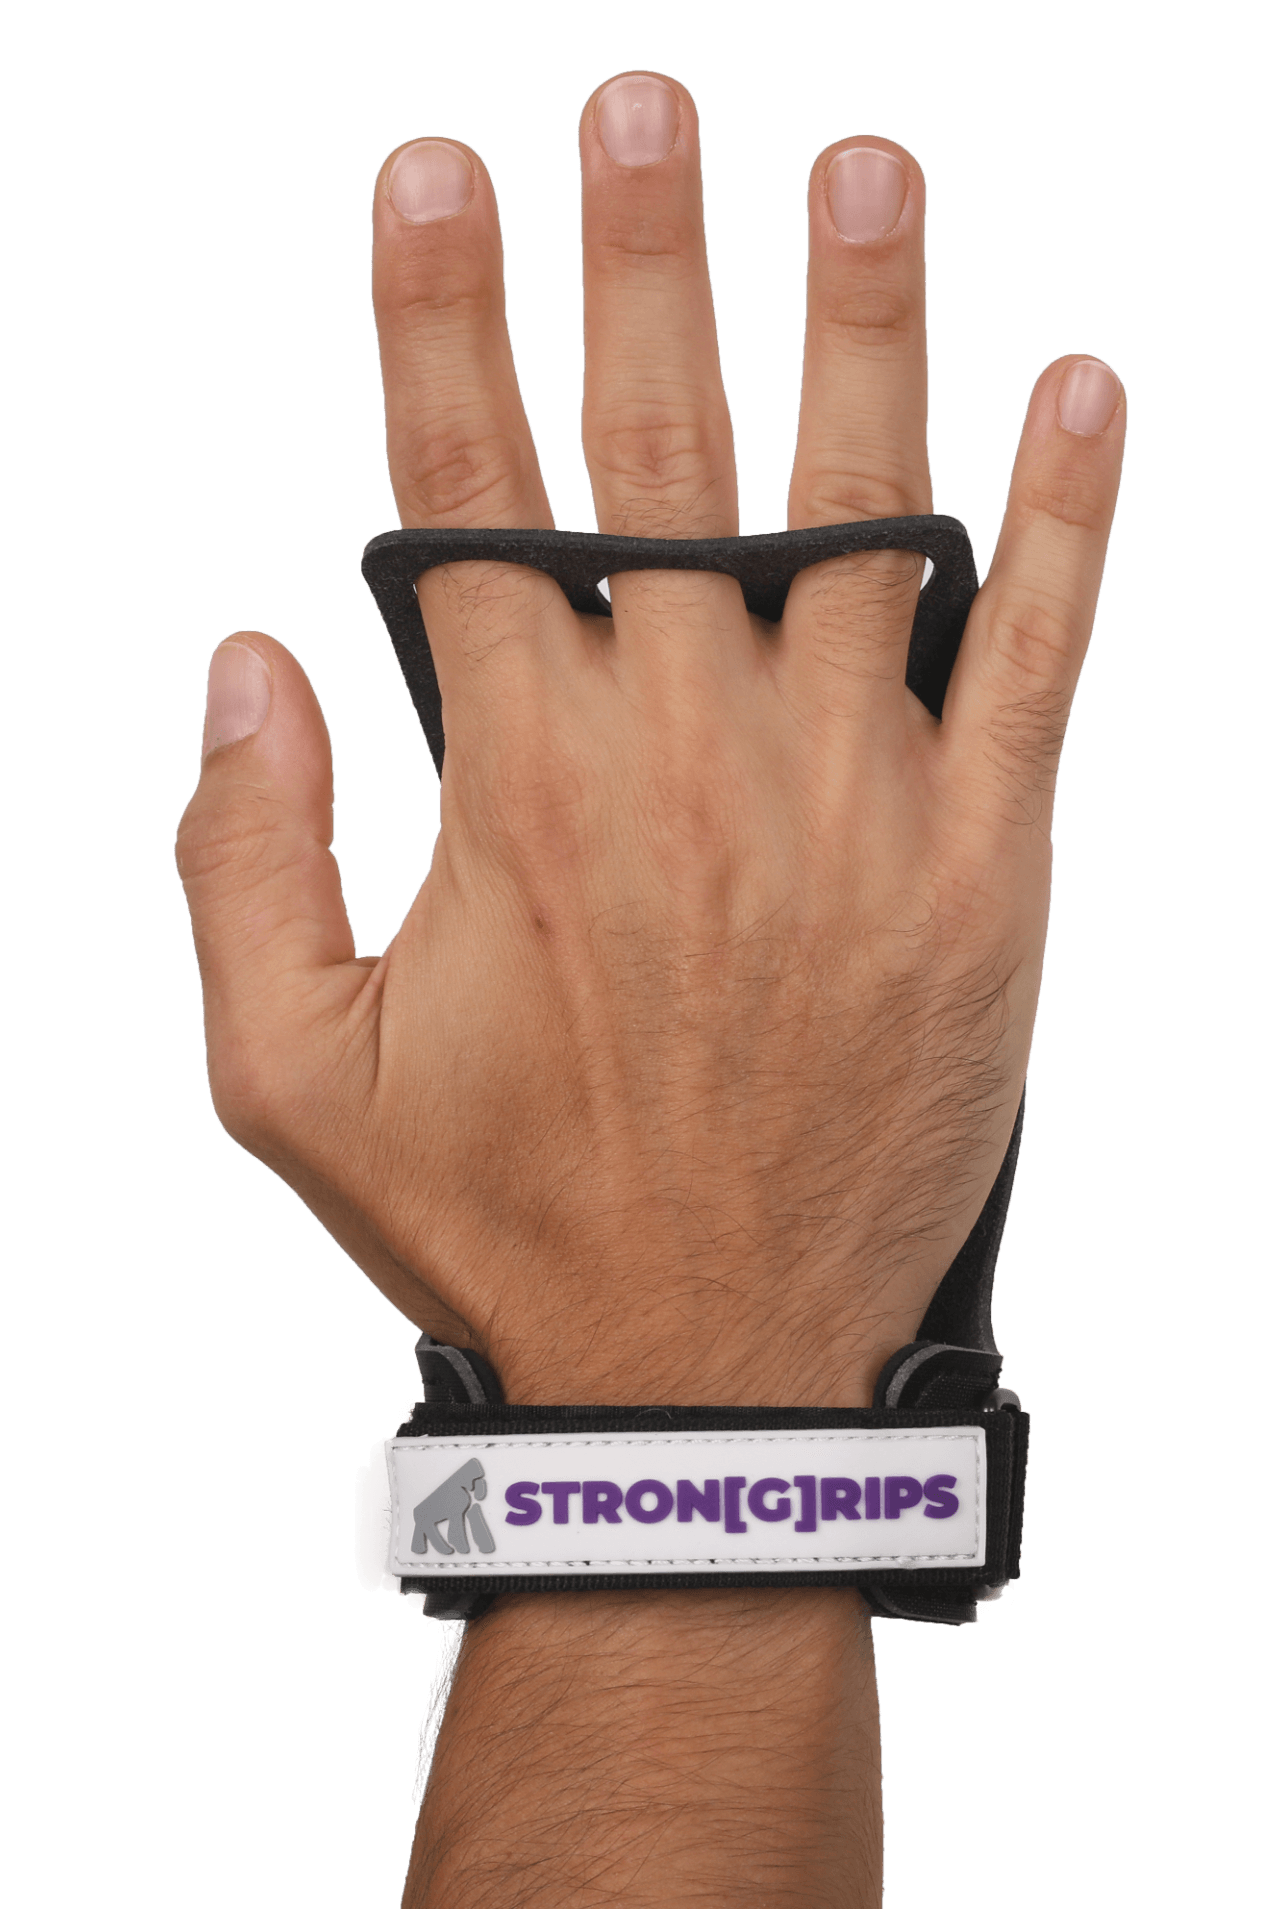 StronGrips Plus Elcikleri ile en zorlu antrenmanlarda elleriniz koruma altında